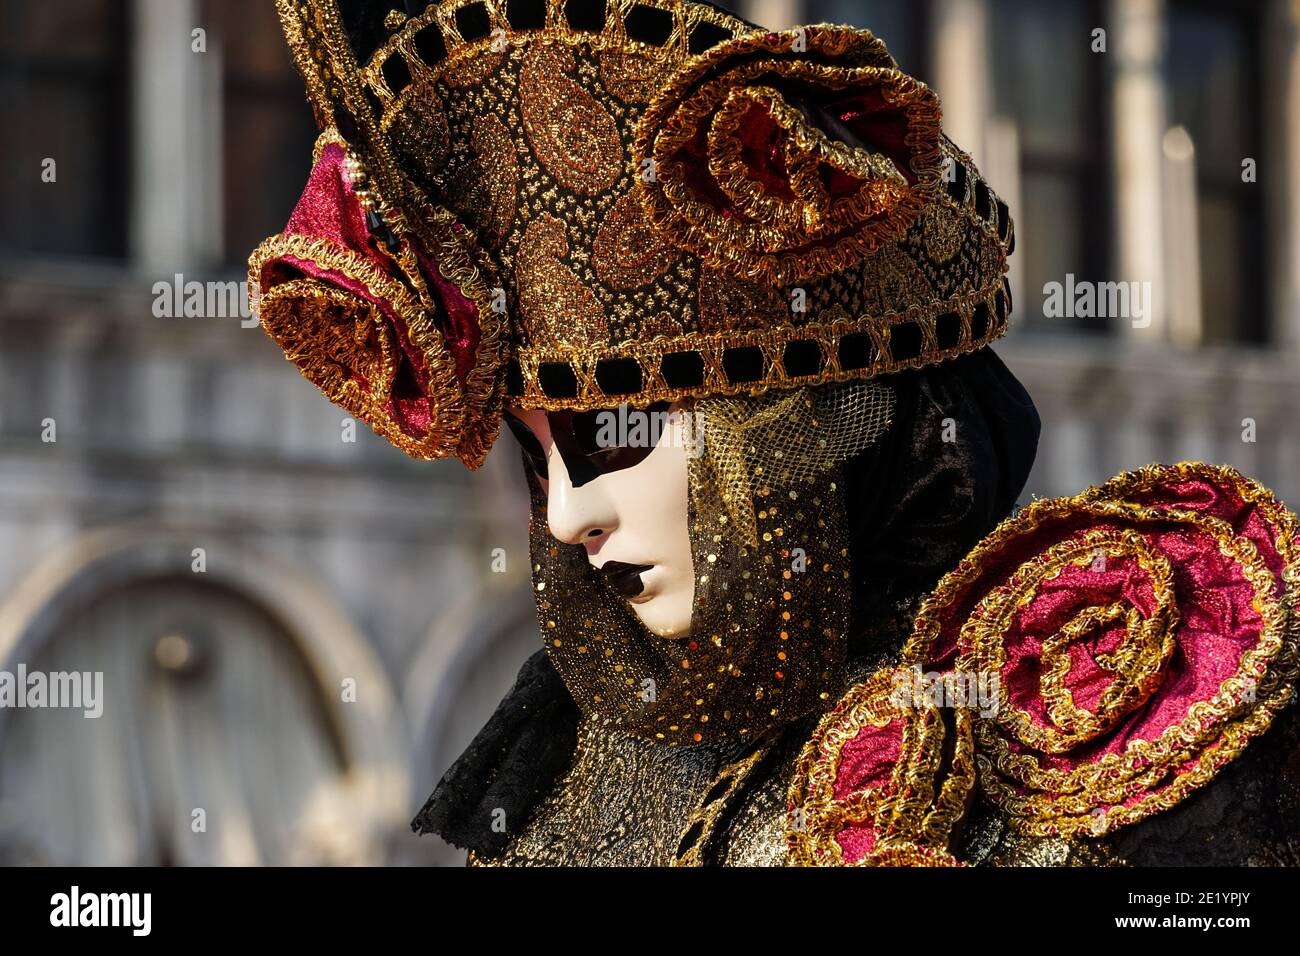 Frau in traditionell dekoriertem Kostüm und bemalter Maske während des Karnevals in Venedig, Italien Stockfoto